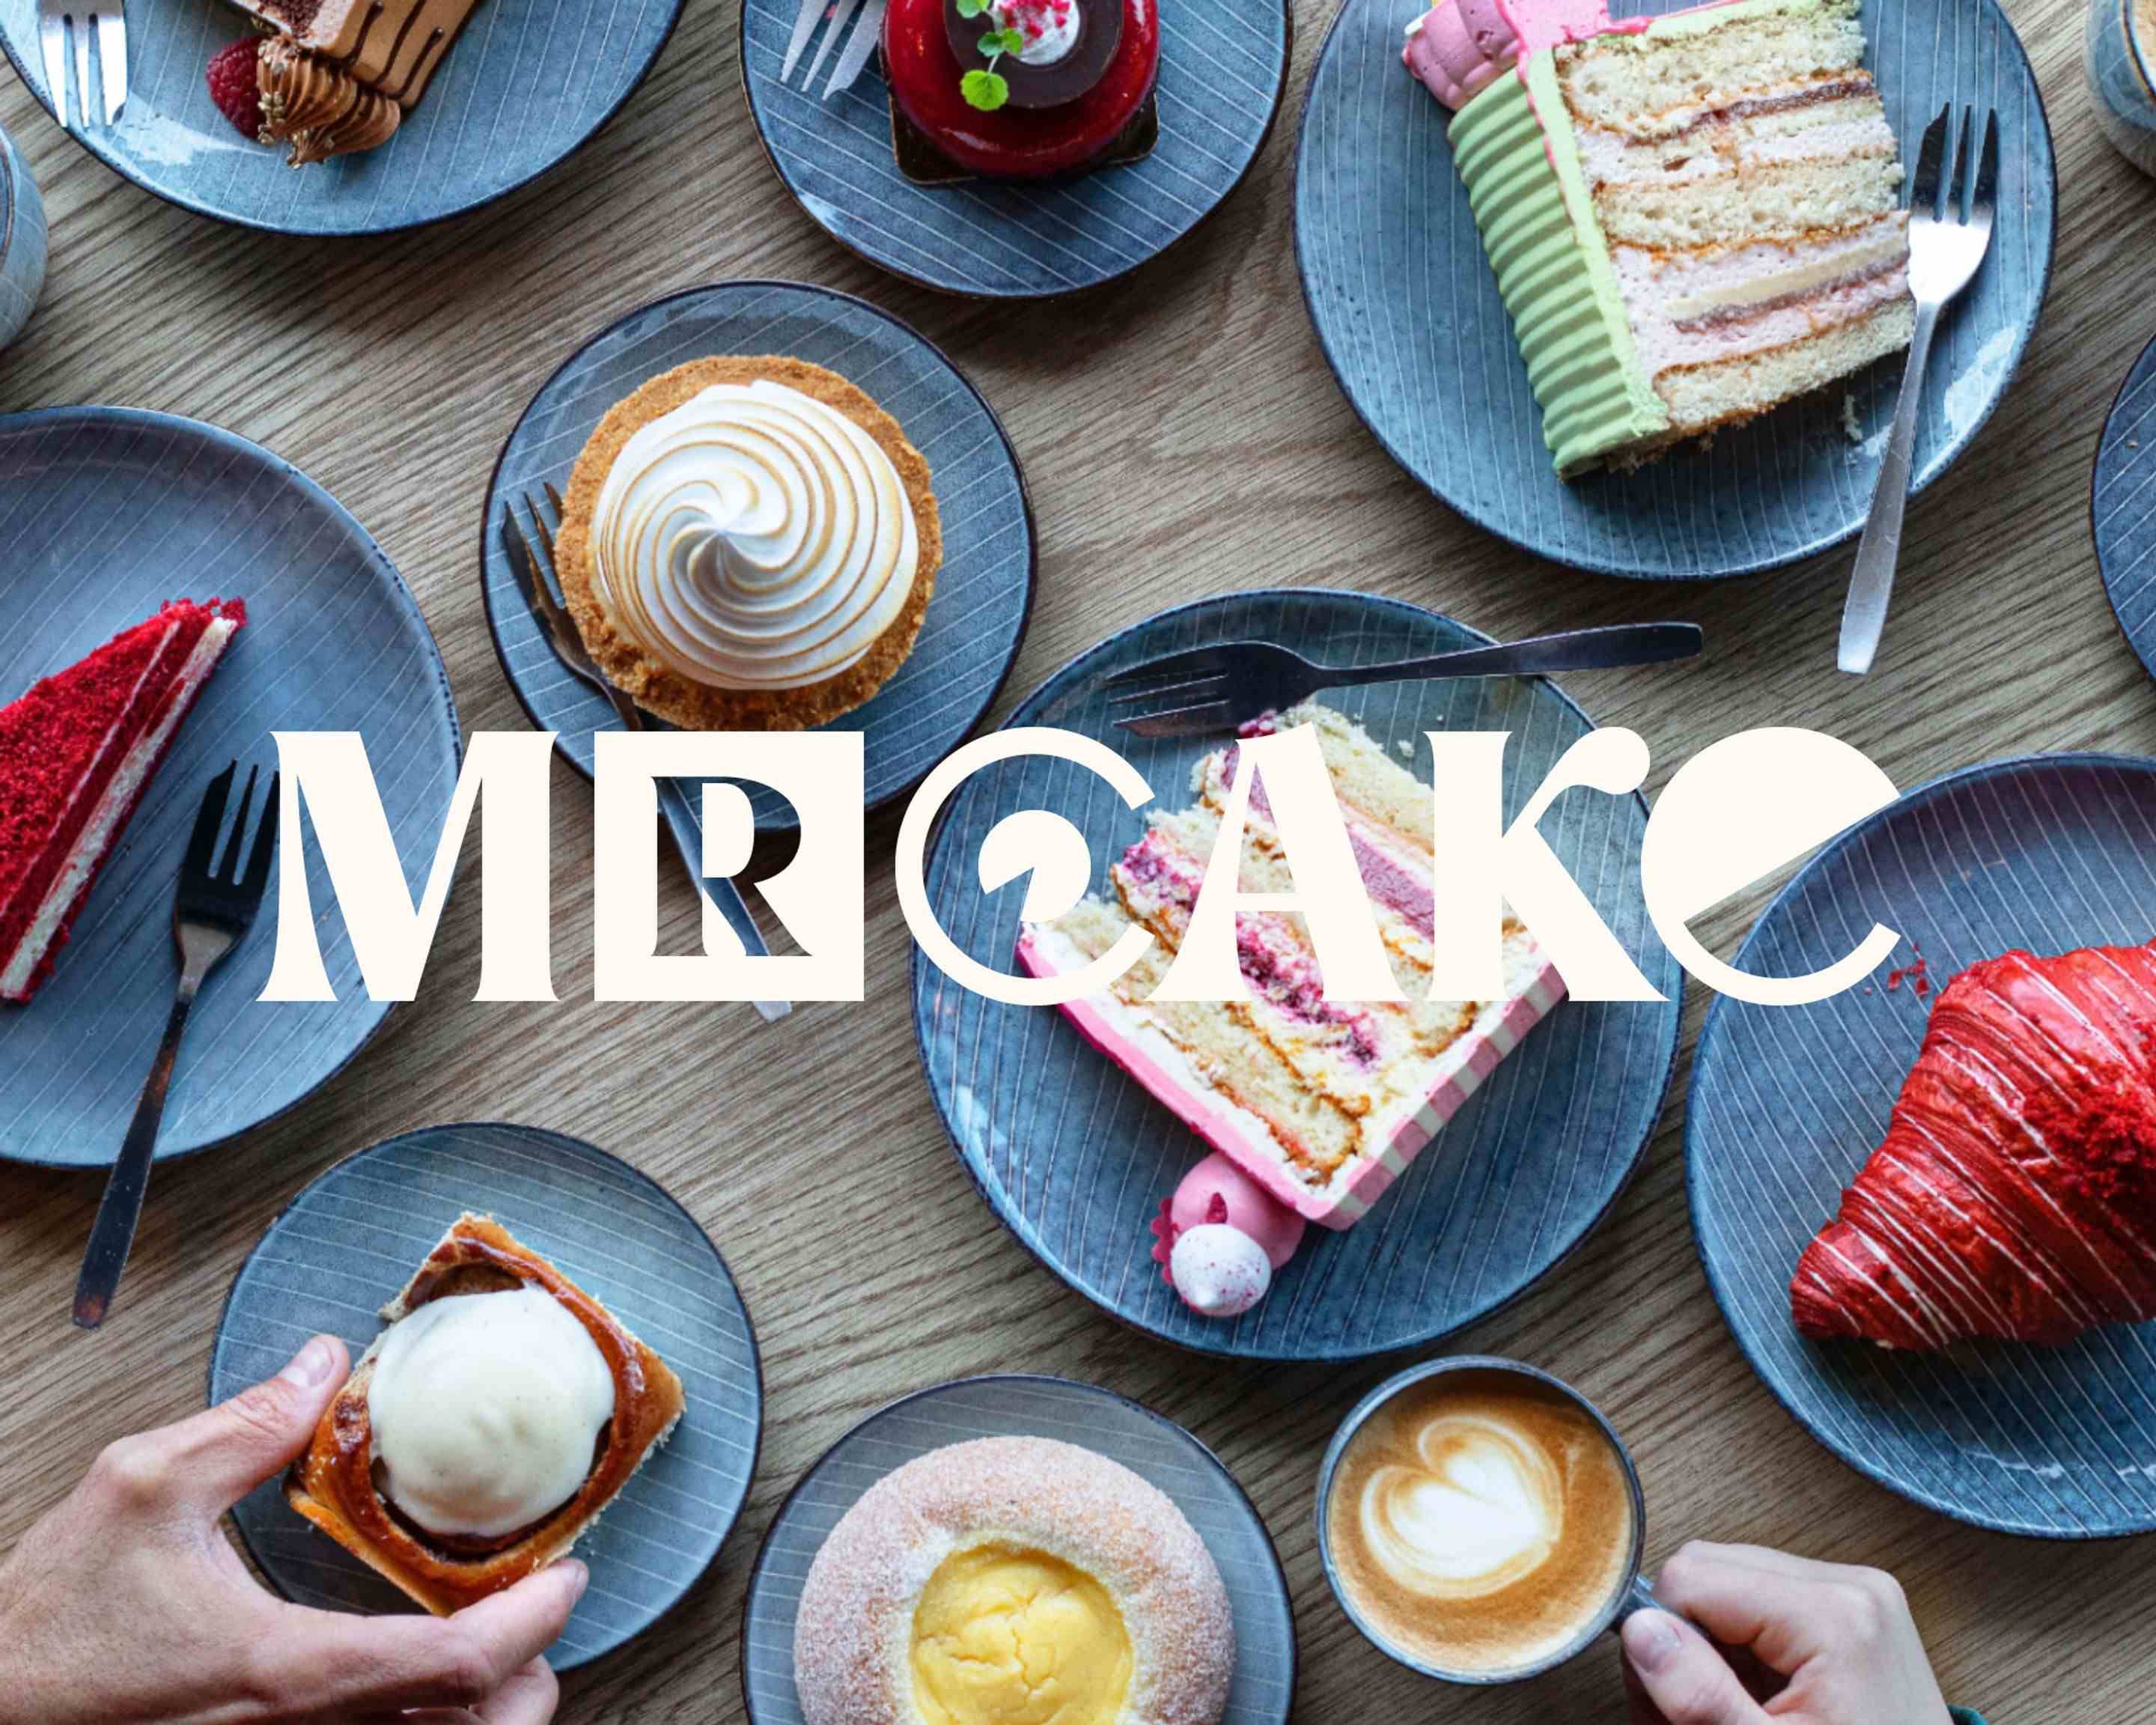 Mr Cake - Stockholm Bakery - HappyCow